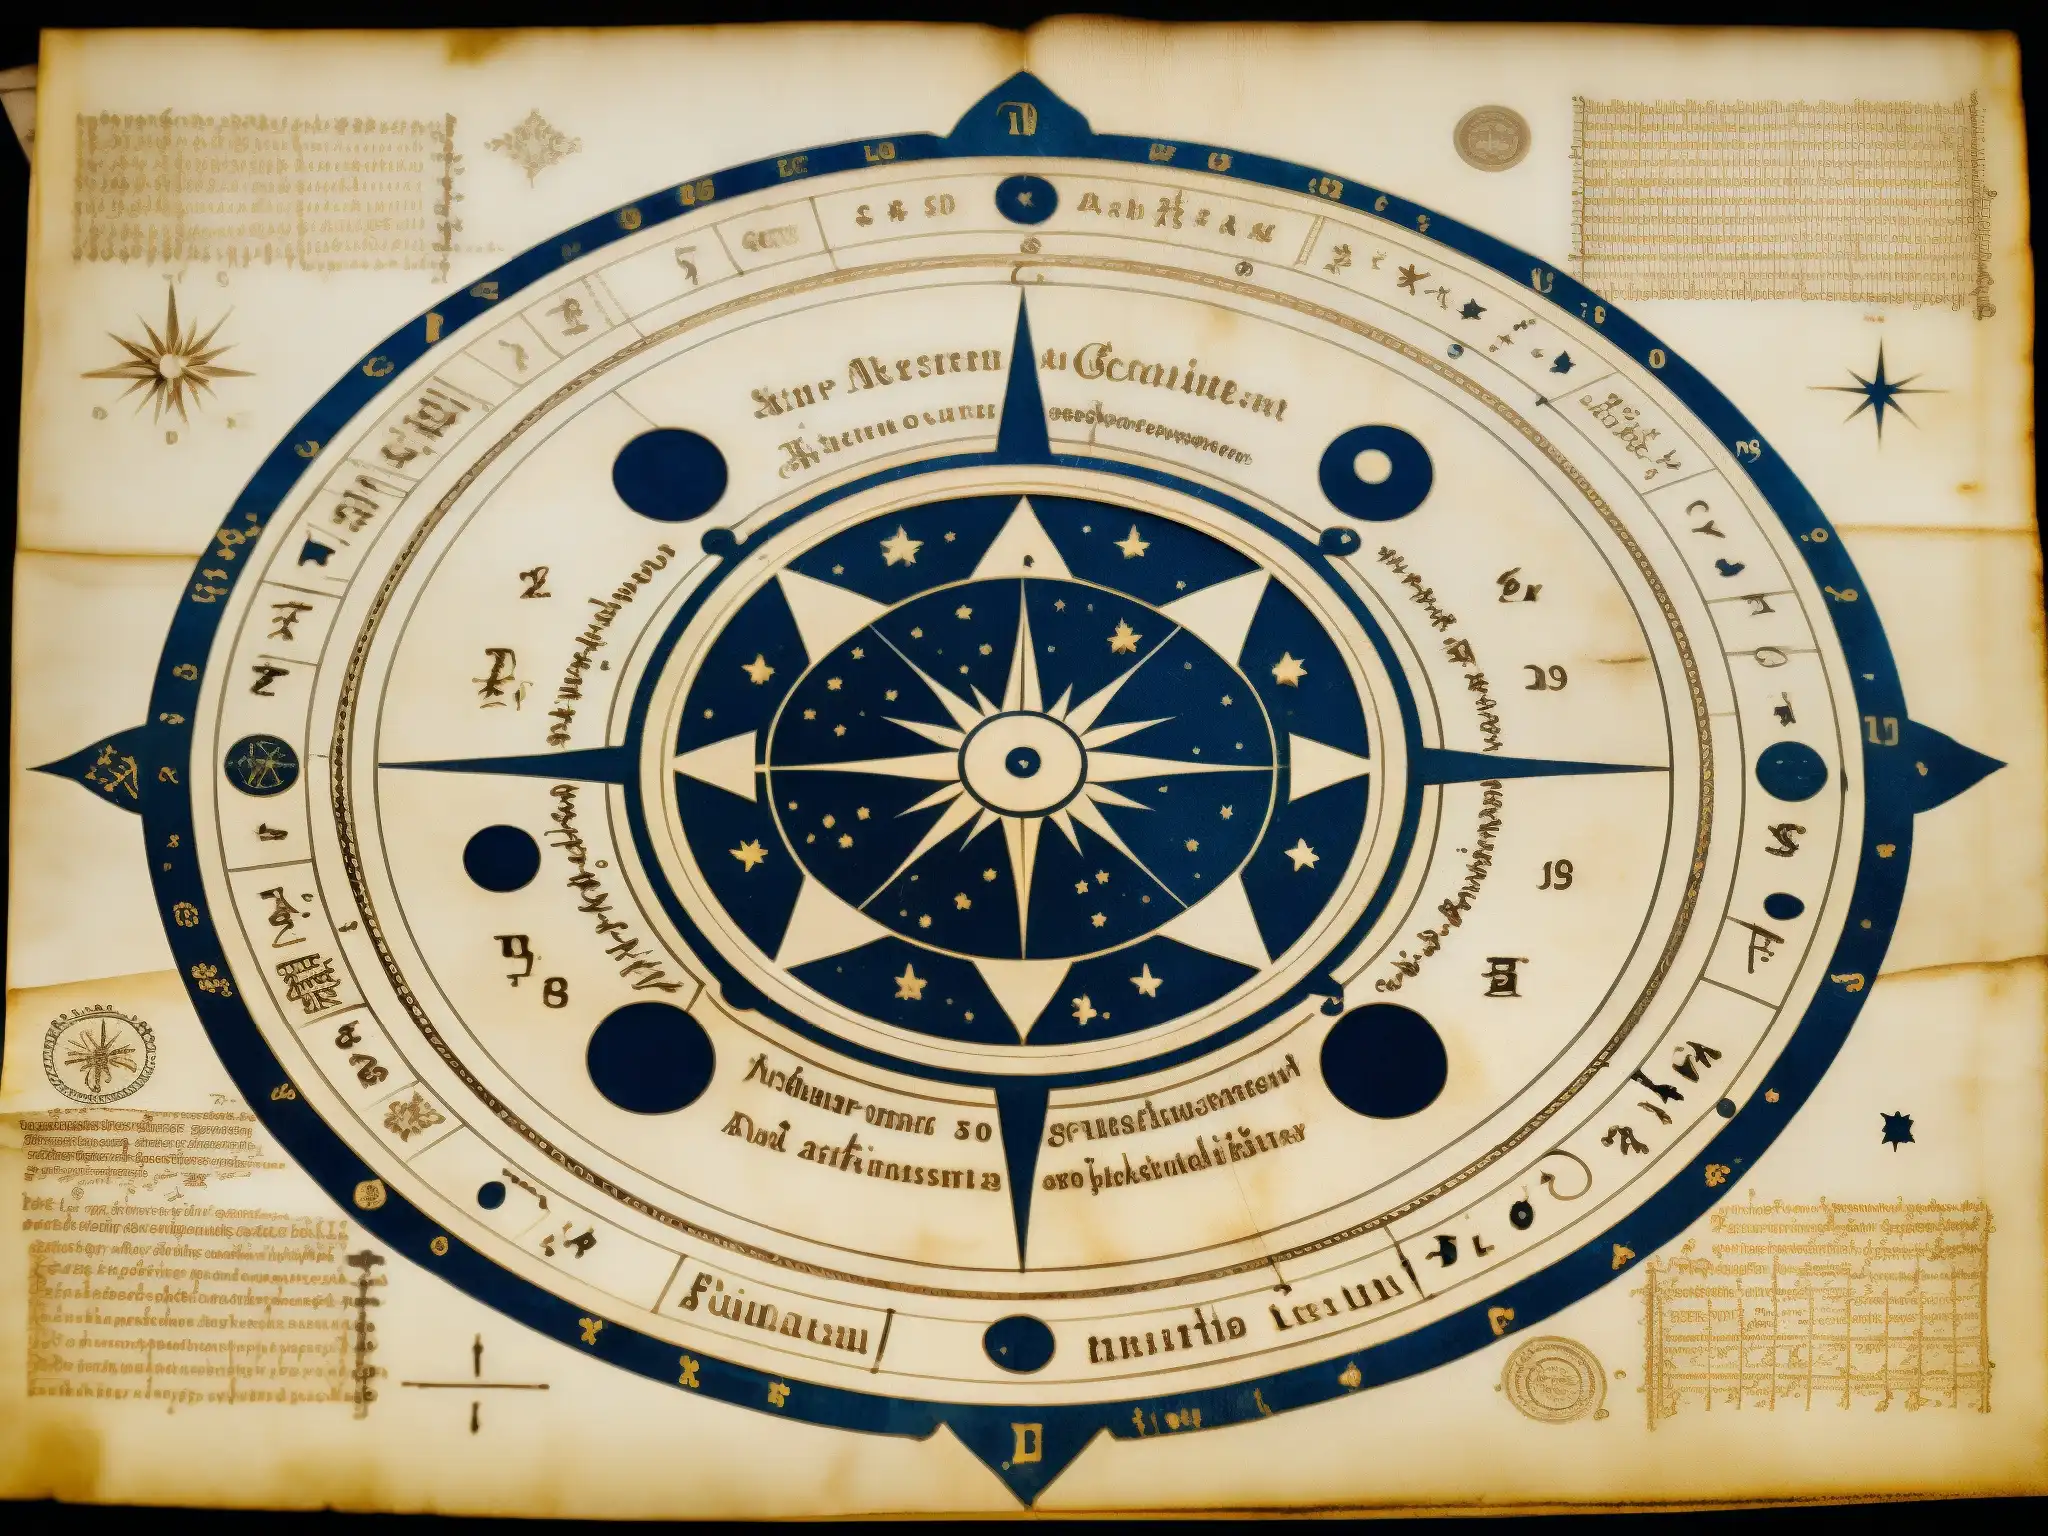 Manuscrito antiguo del astrólogo con mapas celestiales detallados y predicciones escritas a mano, evocando misterio y conocimiento